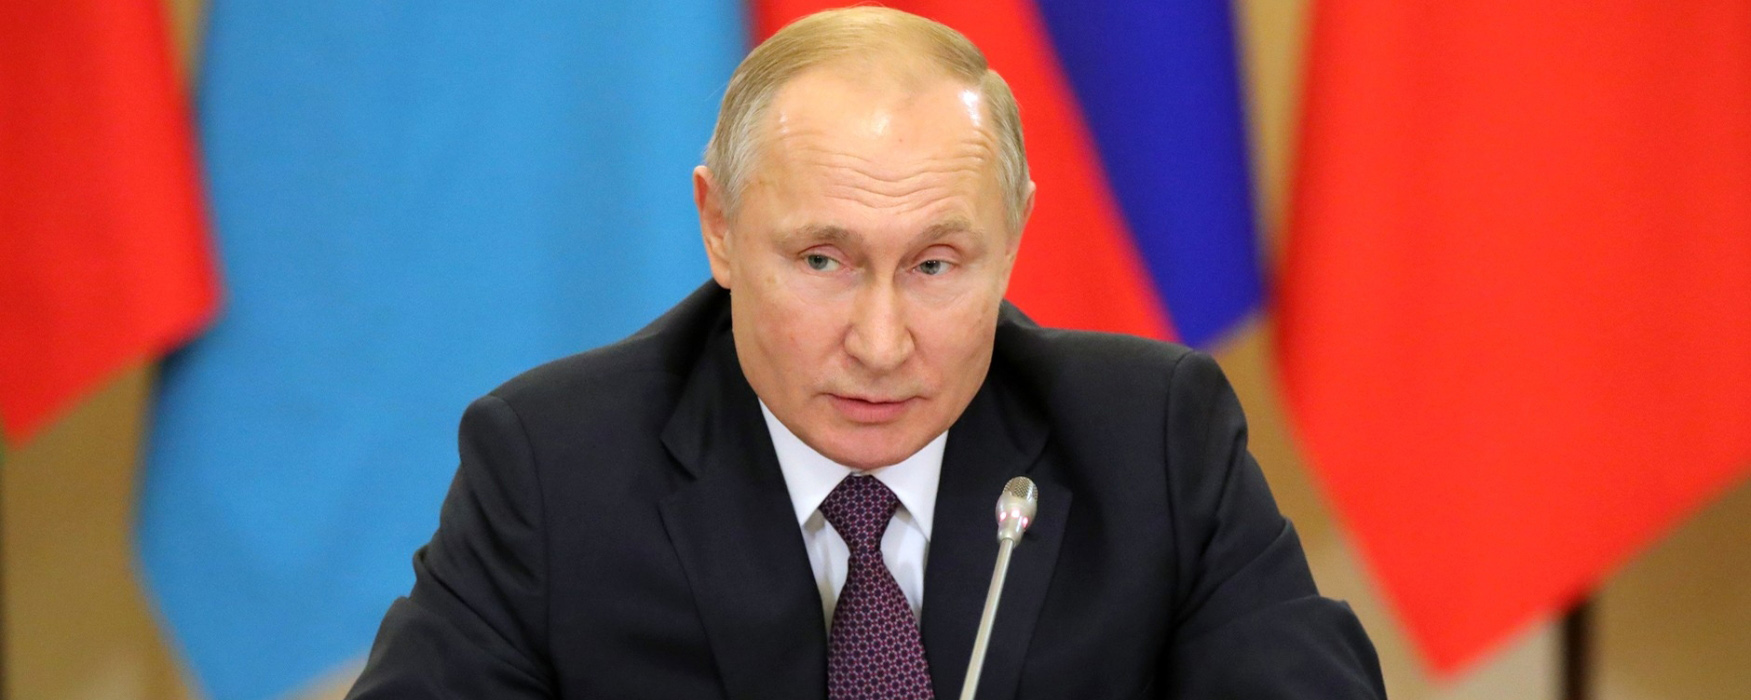 Путин прокомментировал желание лидеров G7 «раздеться» на саммите